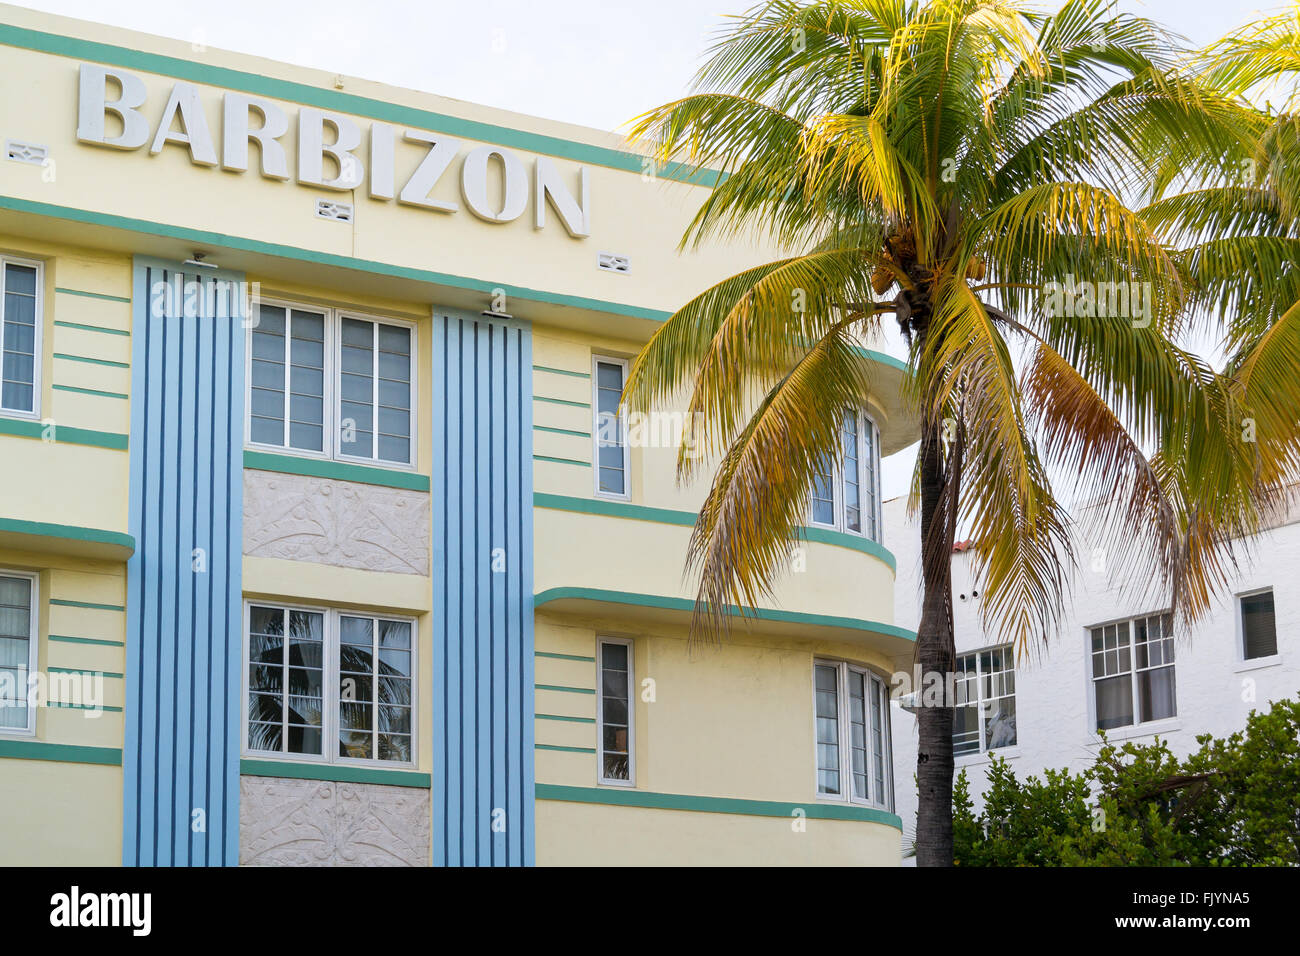 Top facade of art deco house Barbizon on Ocean Drive in South Beach district of Miami Beach, Florida, USA Stock Photo